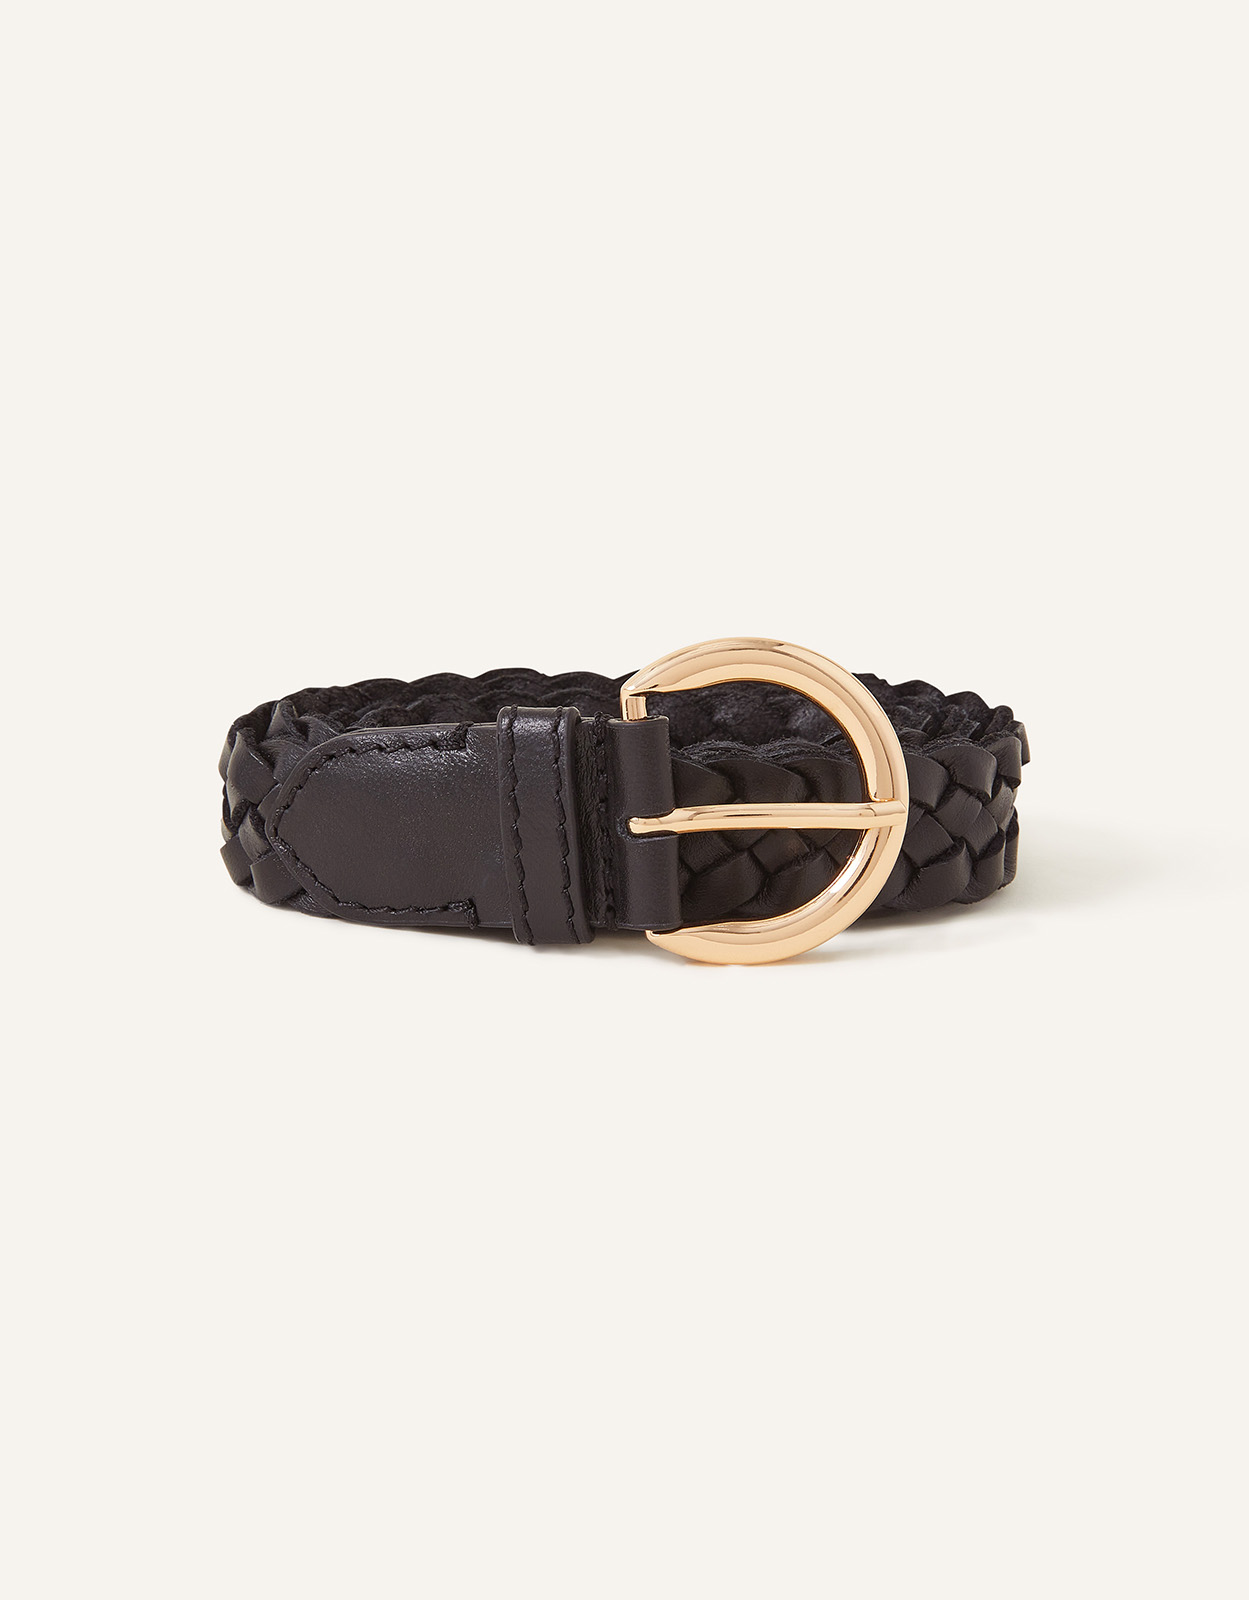 Accessorize Women's Leather Plaited Belt Black, Size: M